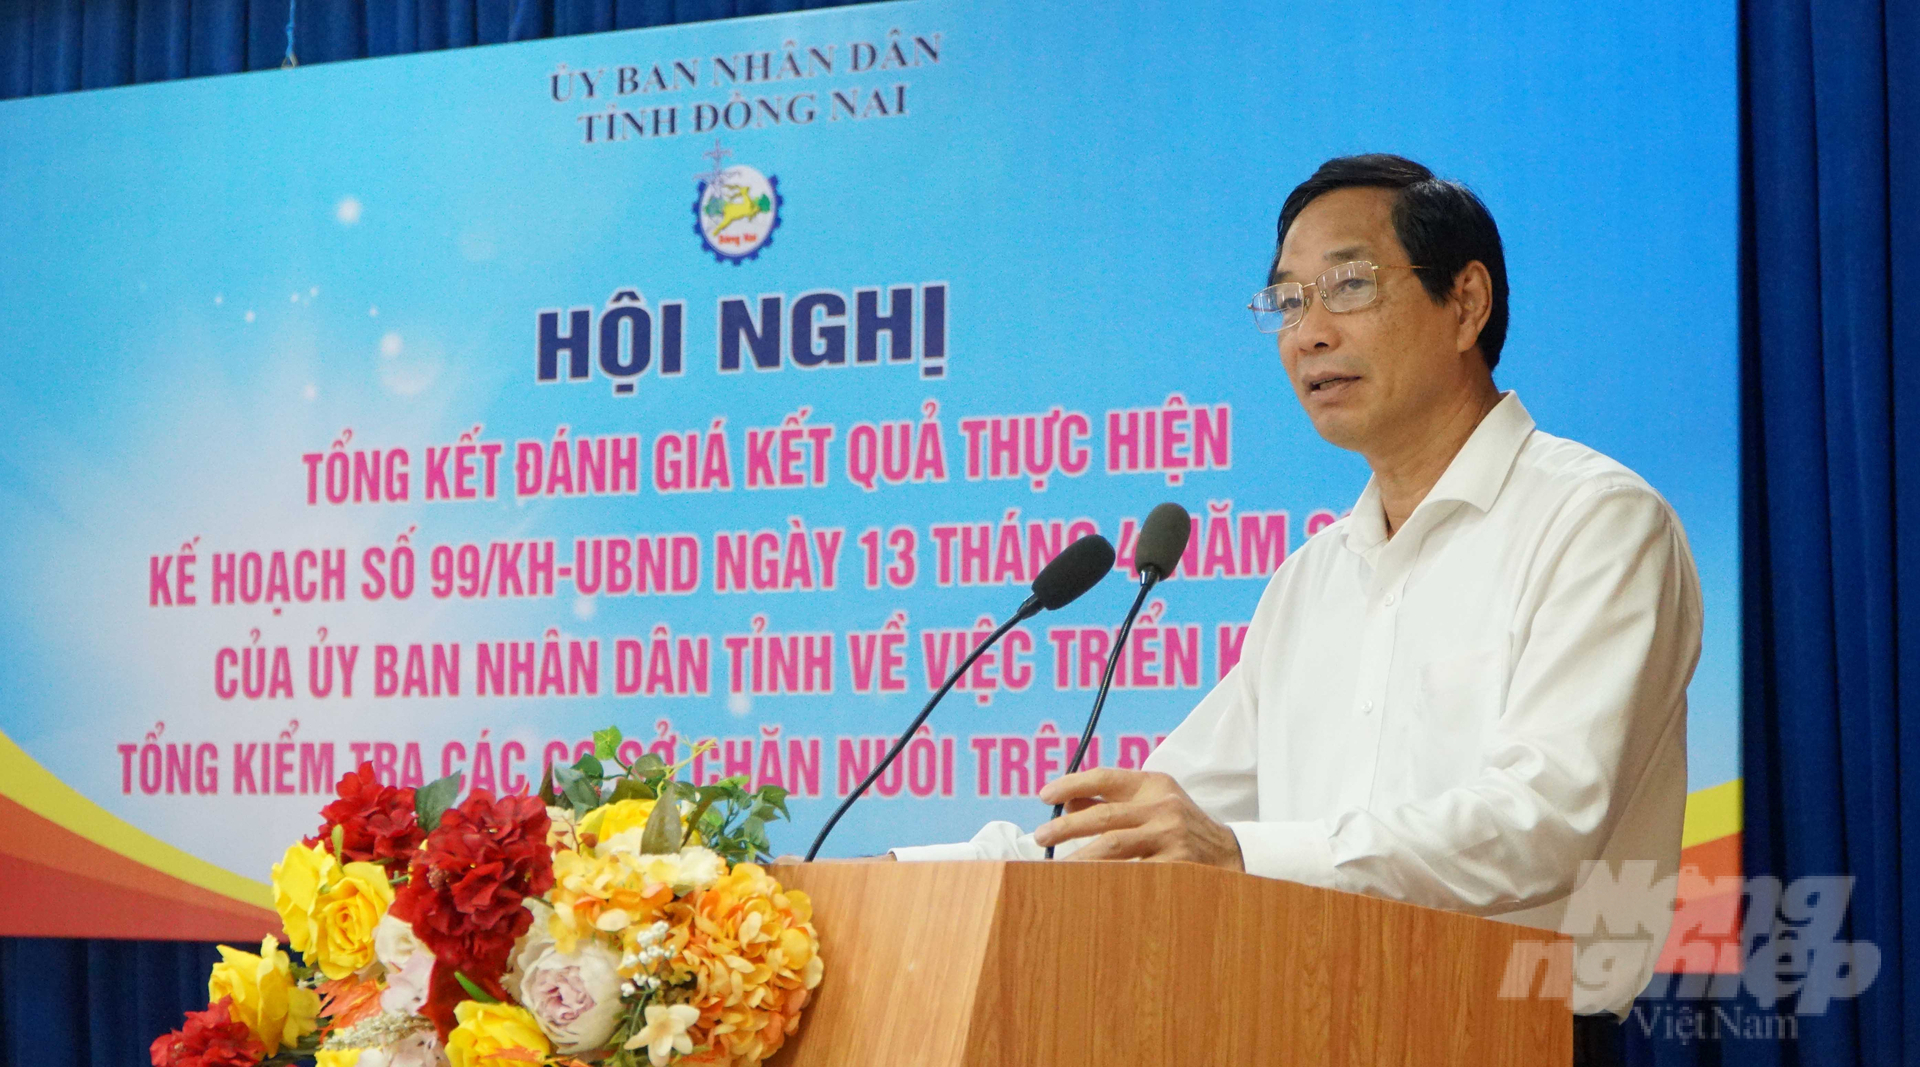 Ông Võ Văn Phi, Phó Chủ tịch UBND tỉnh Đồng Nai phát biểu khai mạc hội nghị tổng kết kiểm tra các cơ sở chăn nuôi. Ảnh: Lê Bình.